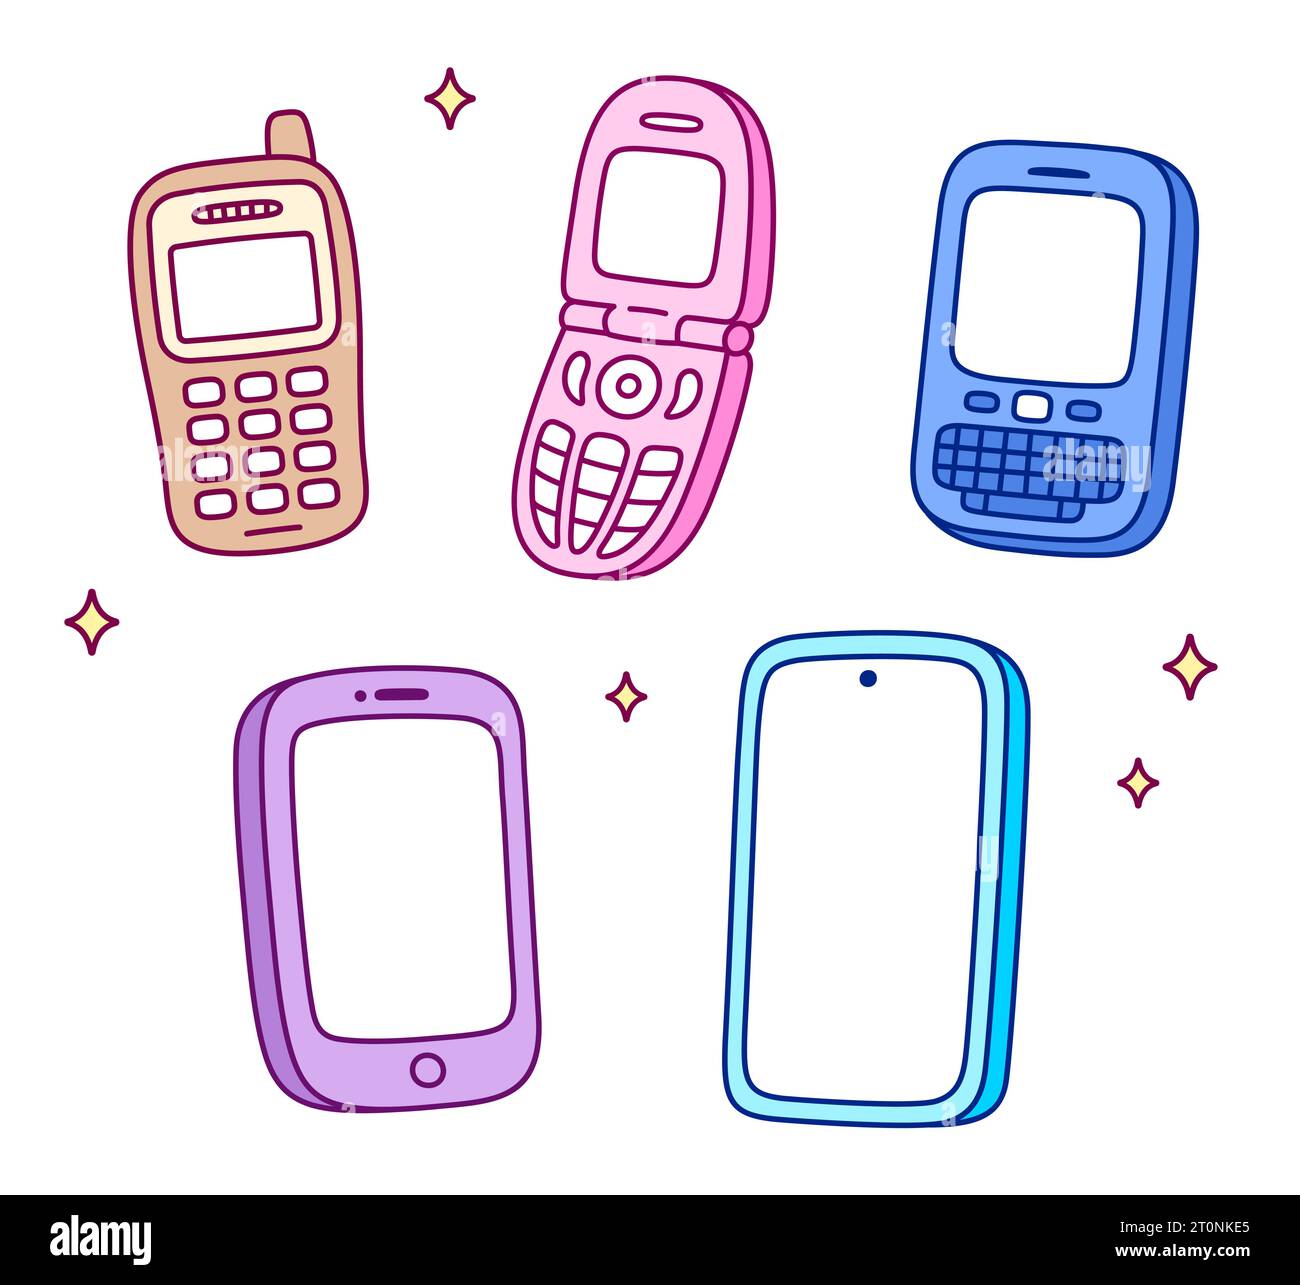 Handy Evolution, niedliches Zeichentrickset. Handgezeichnete Kritzeleien aus Retro-Handy, Flip-Phone und modernen Smartphone-Geräten. Vektorabbildung Stock Vektor